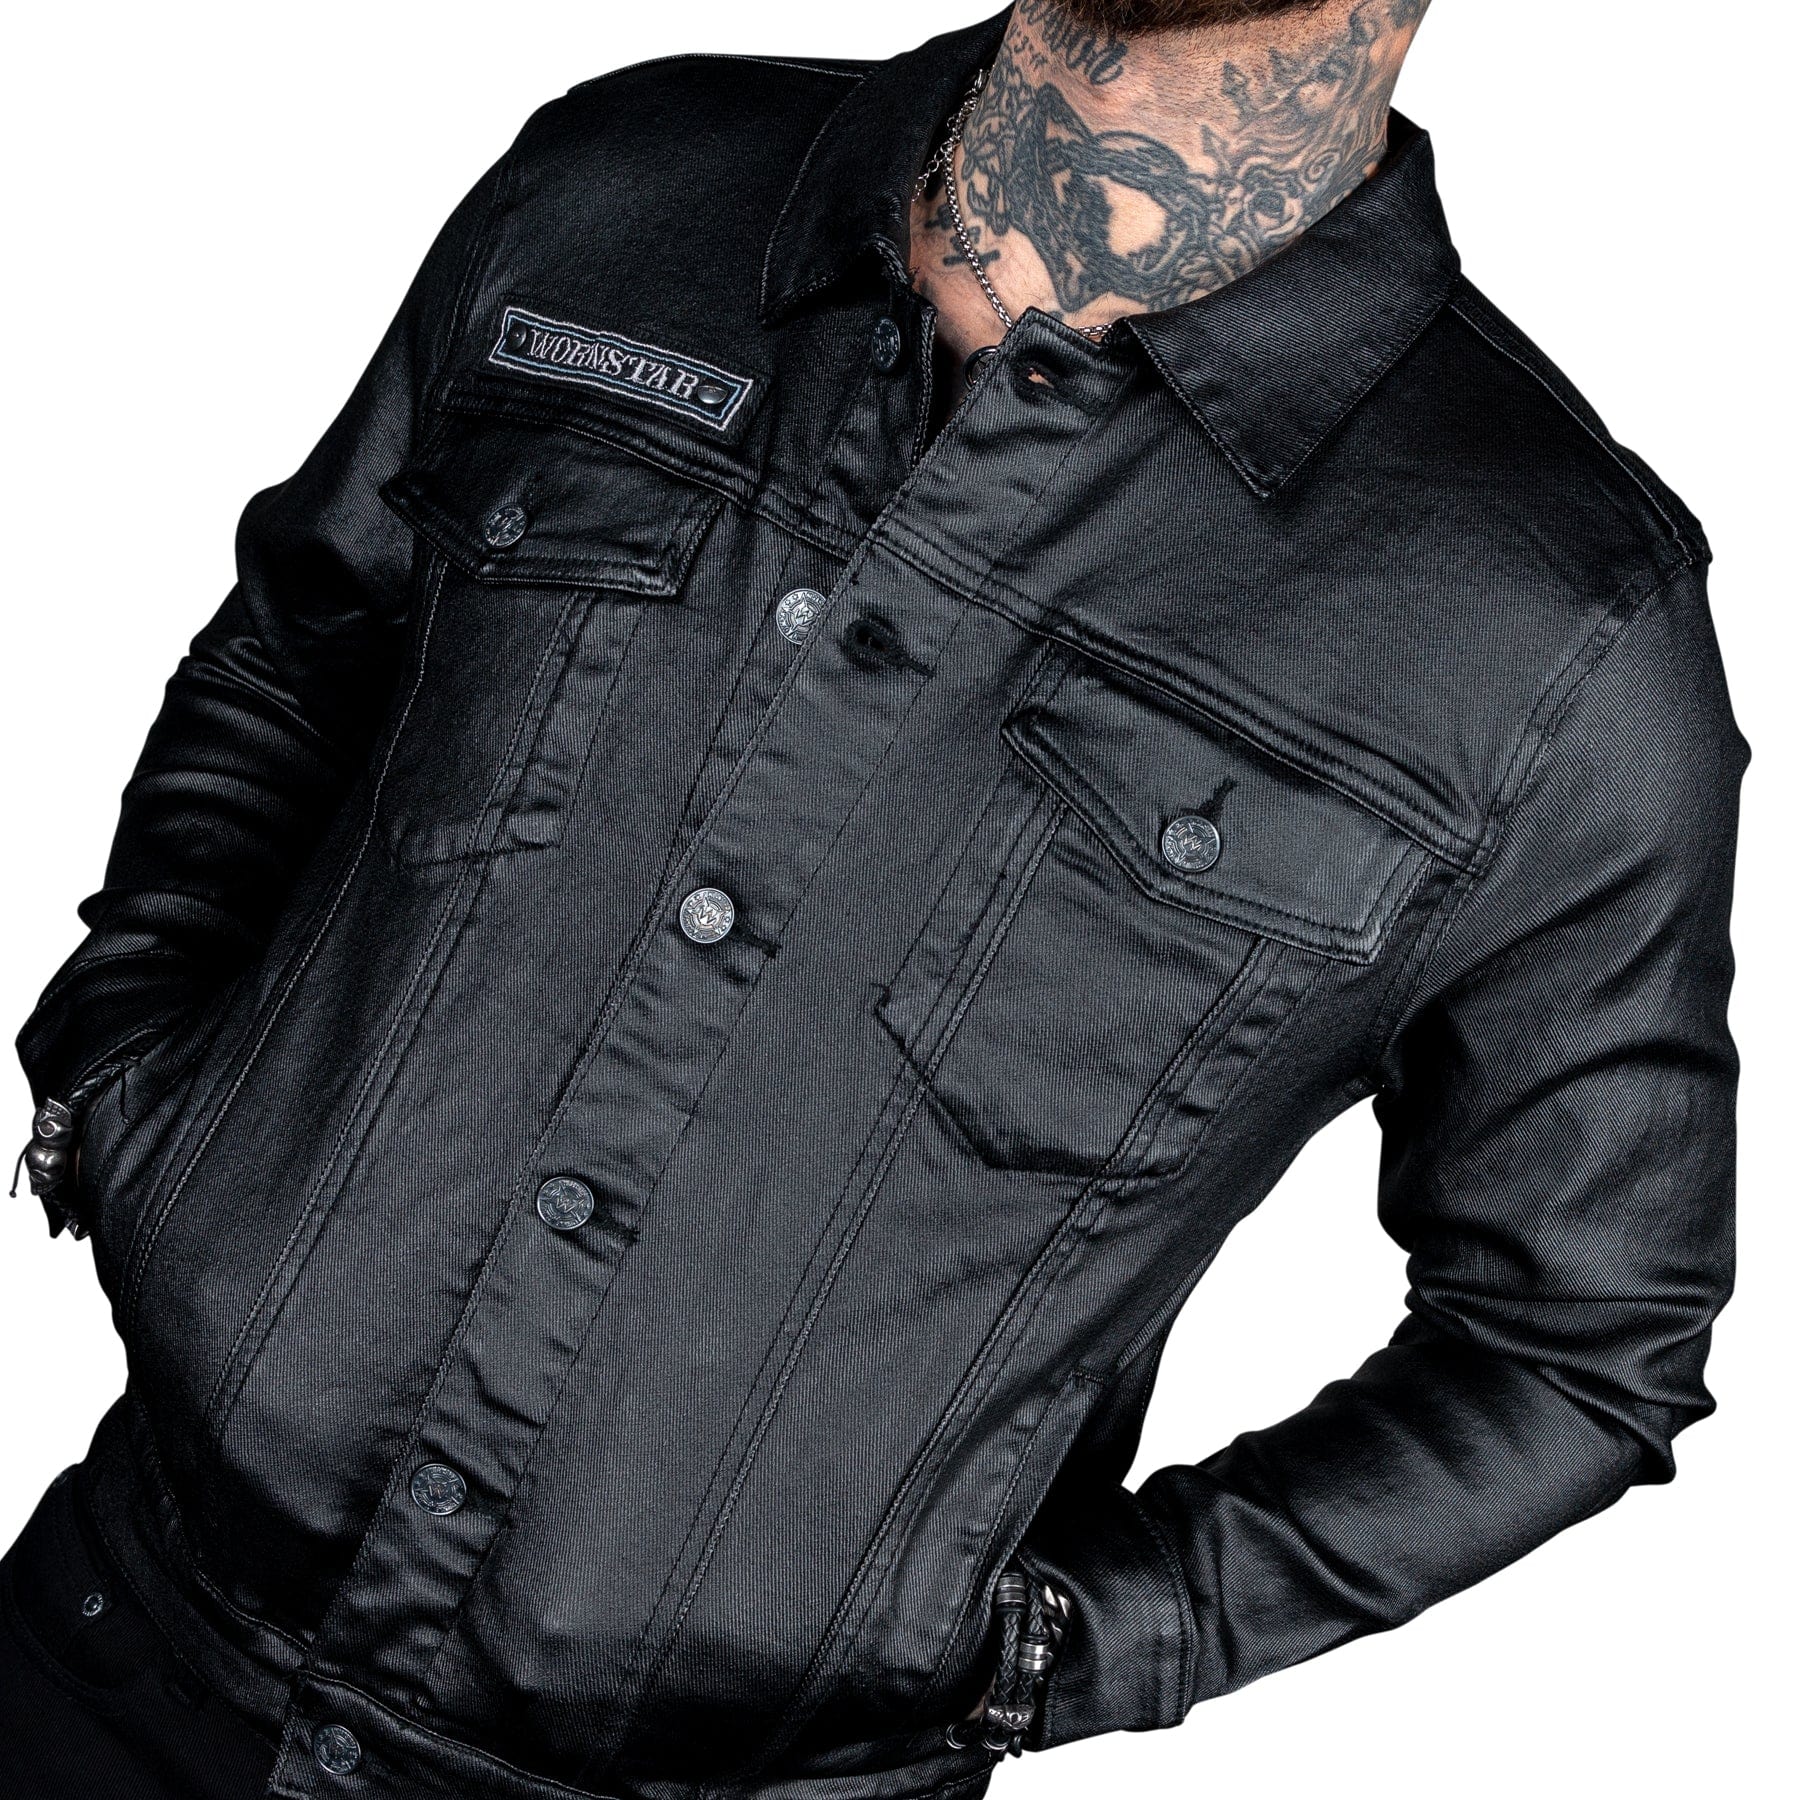 Black Leather Jacket- Denim Shirt-Black Jeans ⋆ Best Fashion Blog For Men -  TheUnstitchd.com